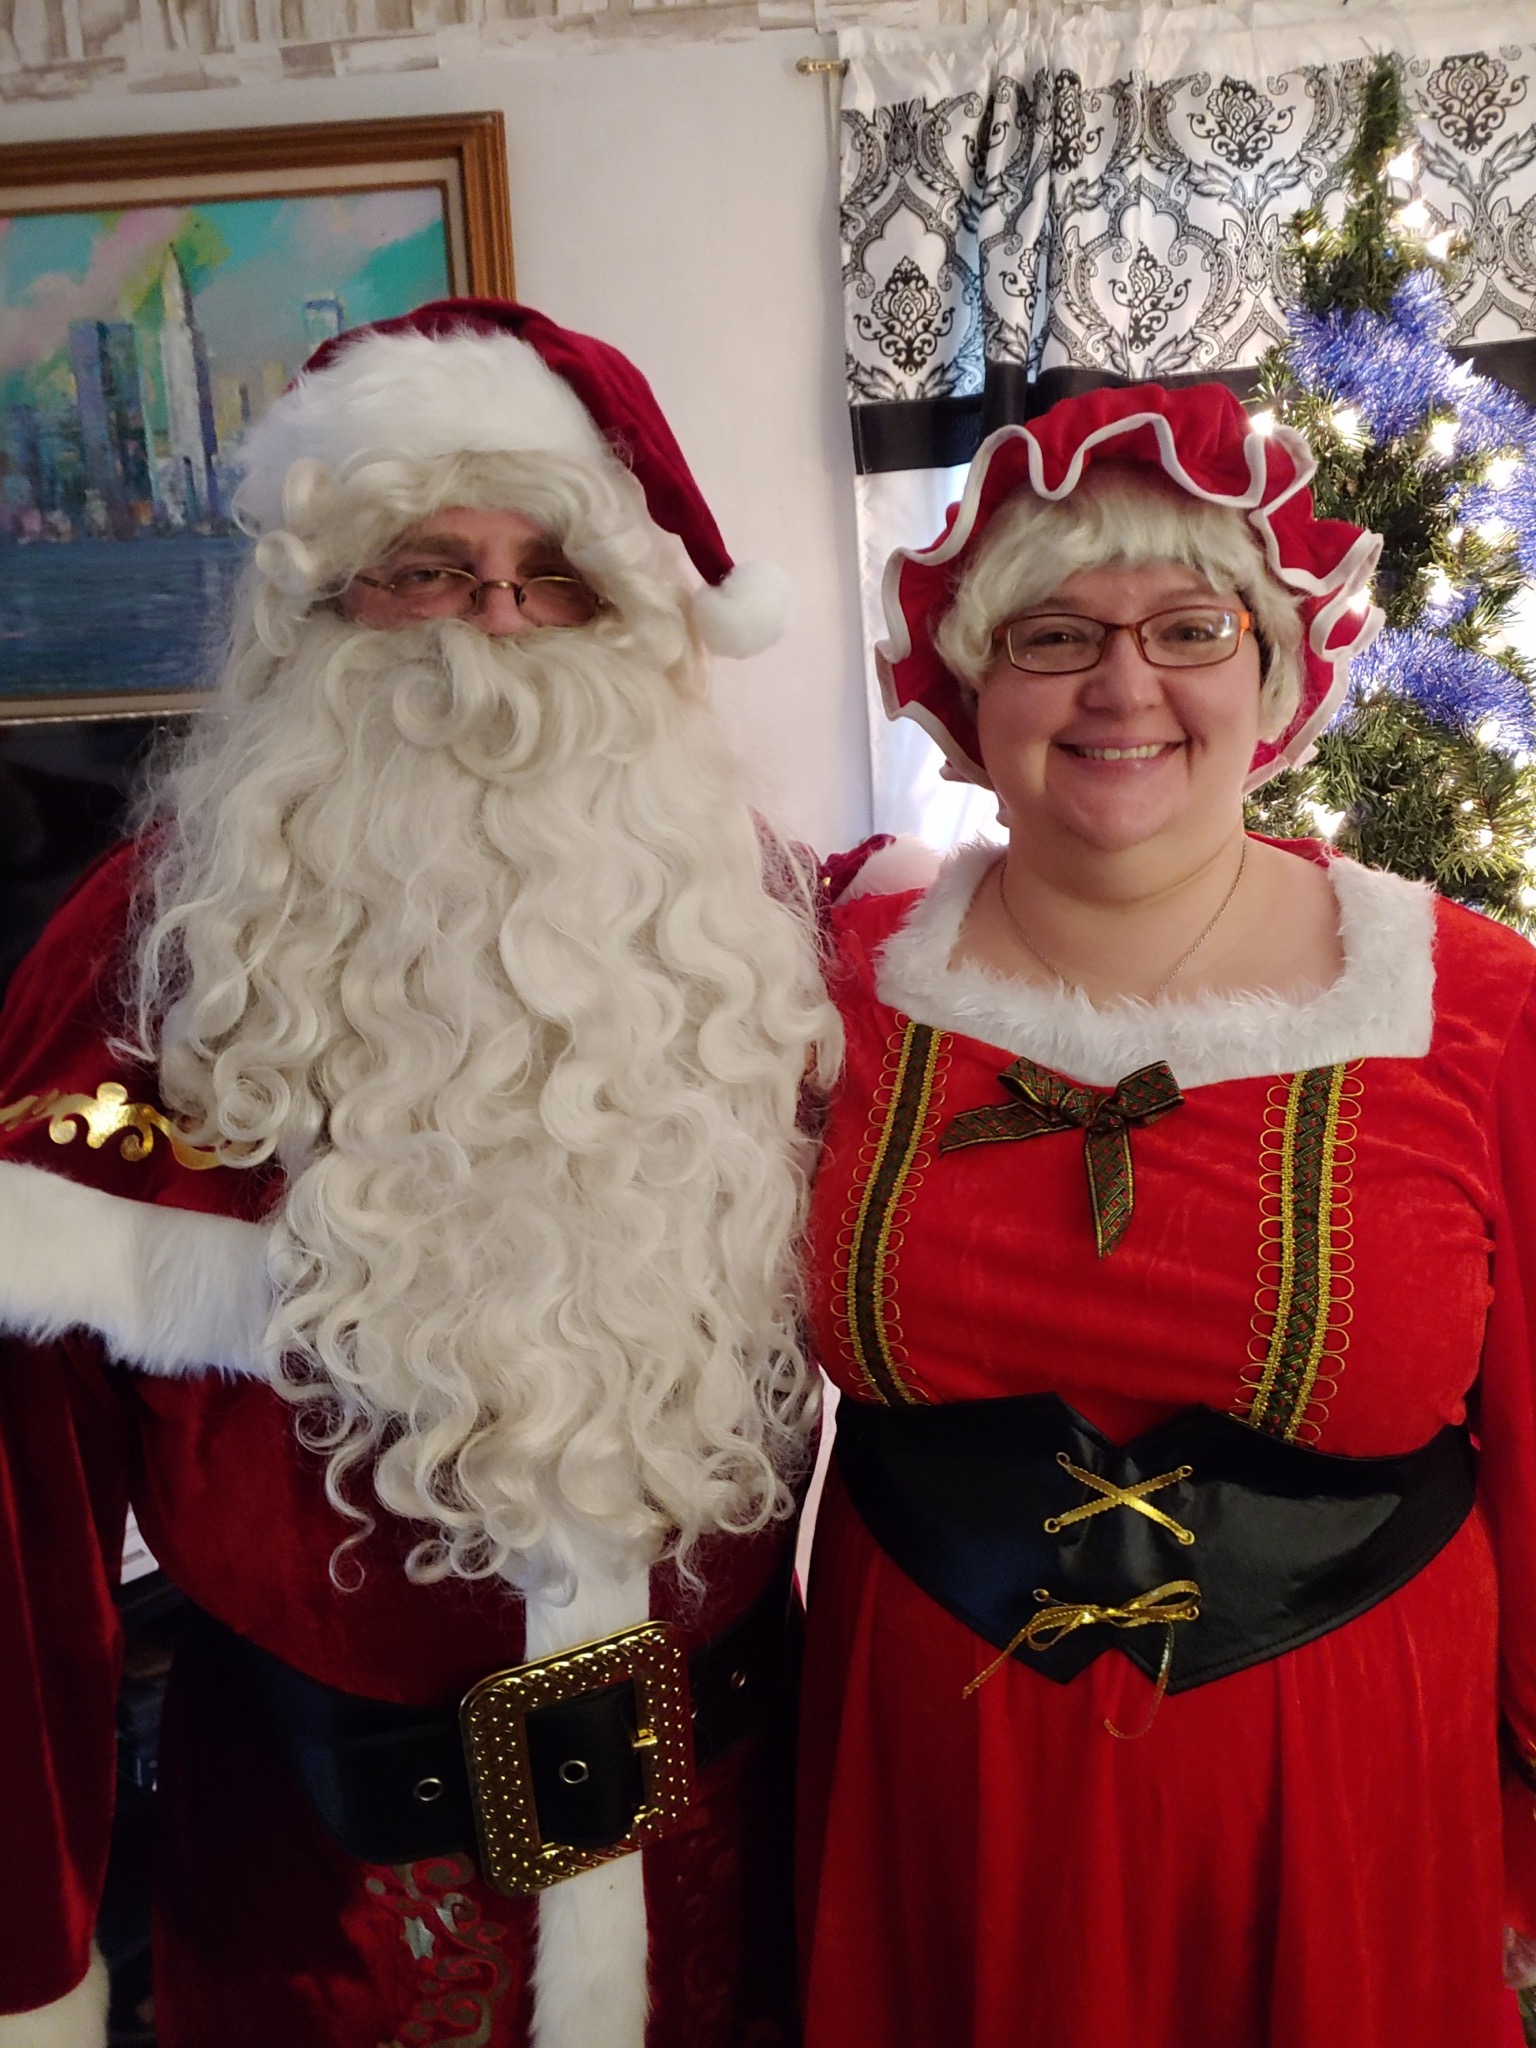 Santa and Mrs. Claus at the Beals